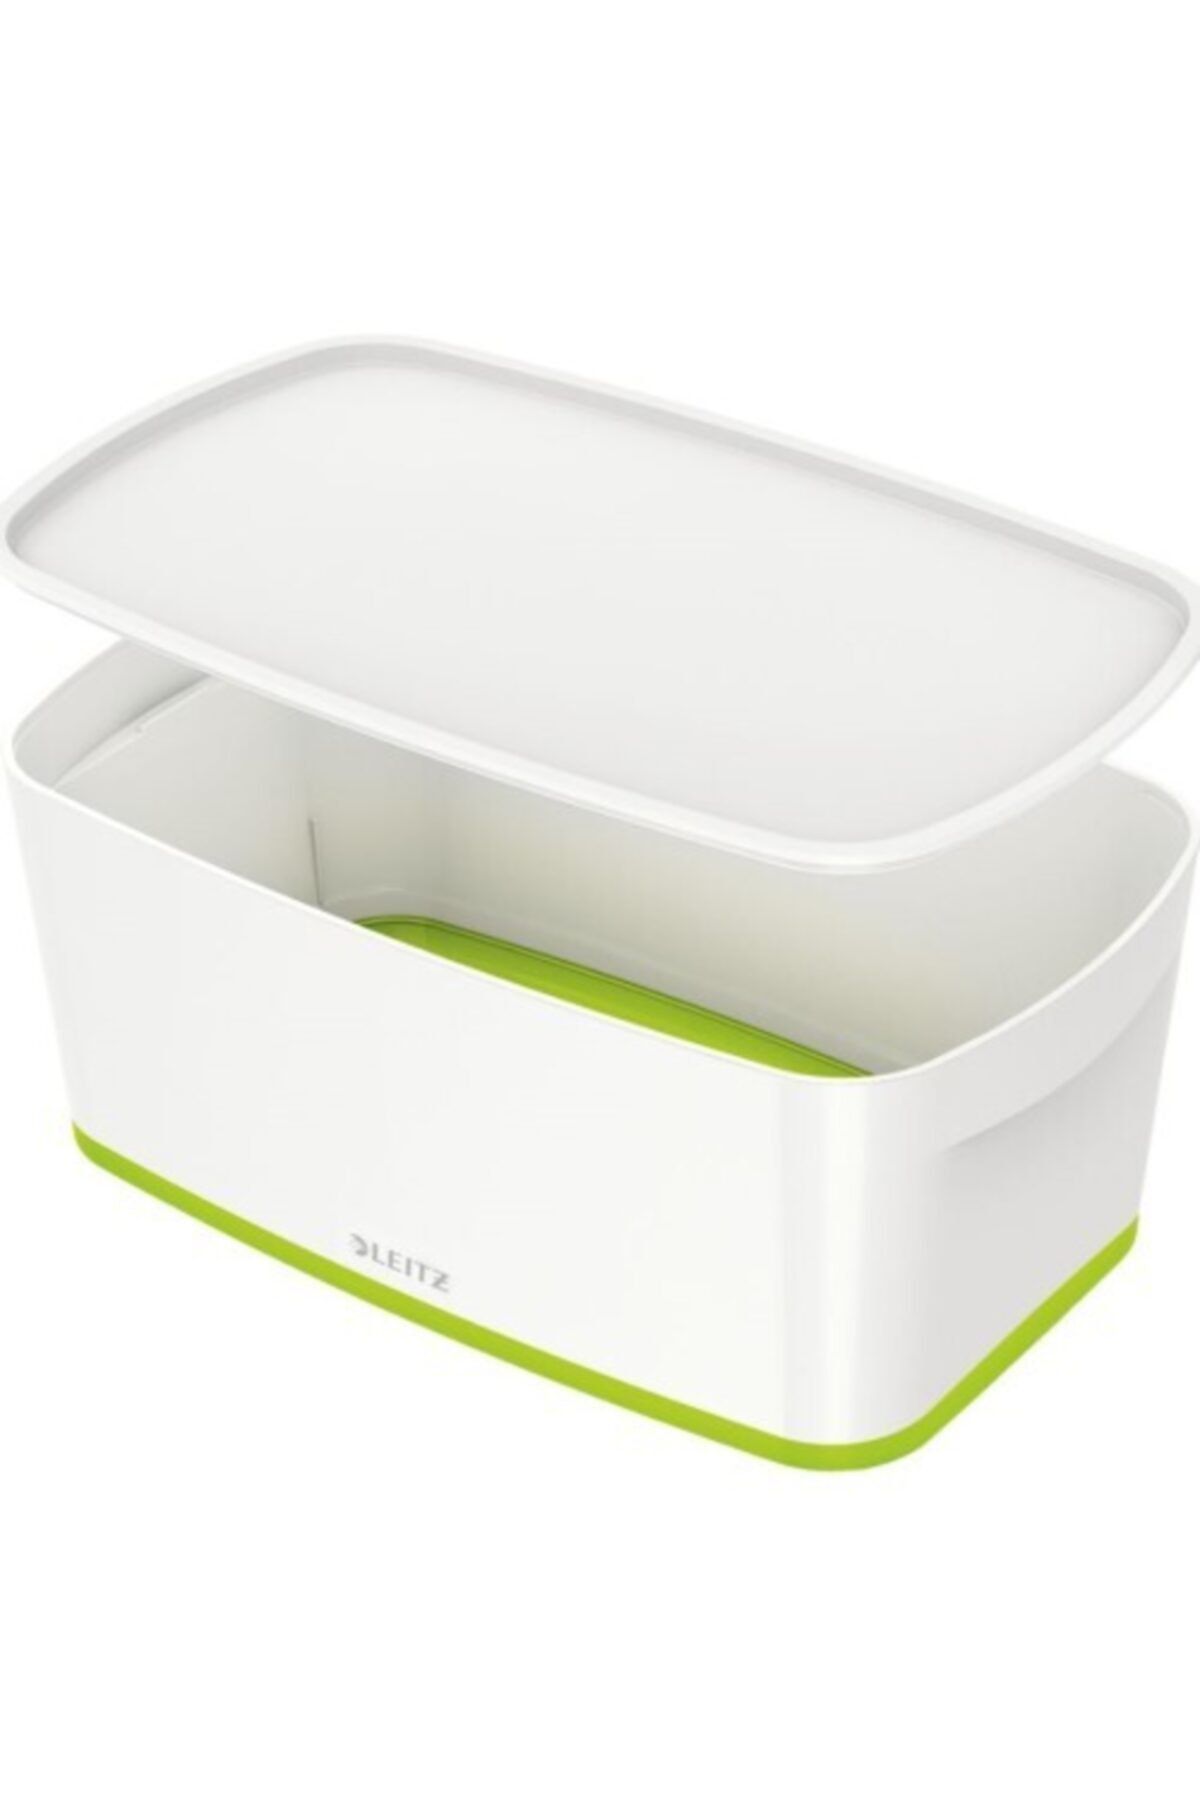 Leitz Mybox® Kapaklı, Küçük Saklama Kutusu Beyaz Yeşil